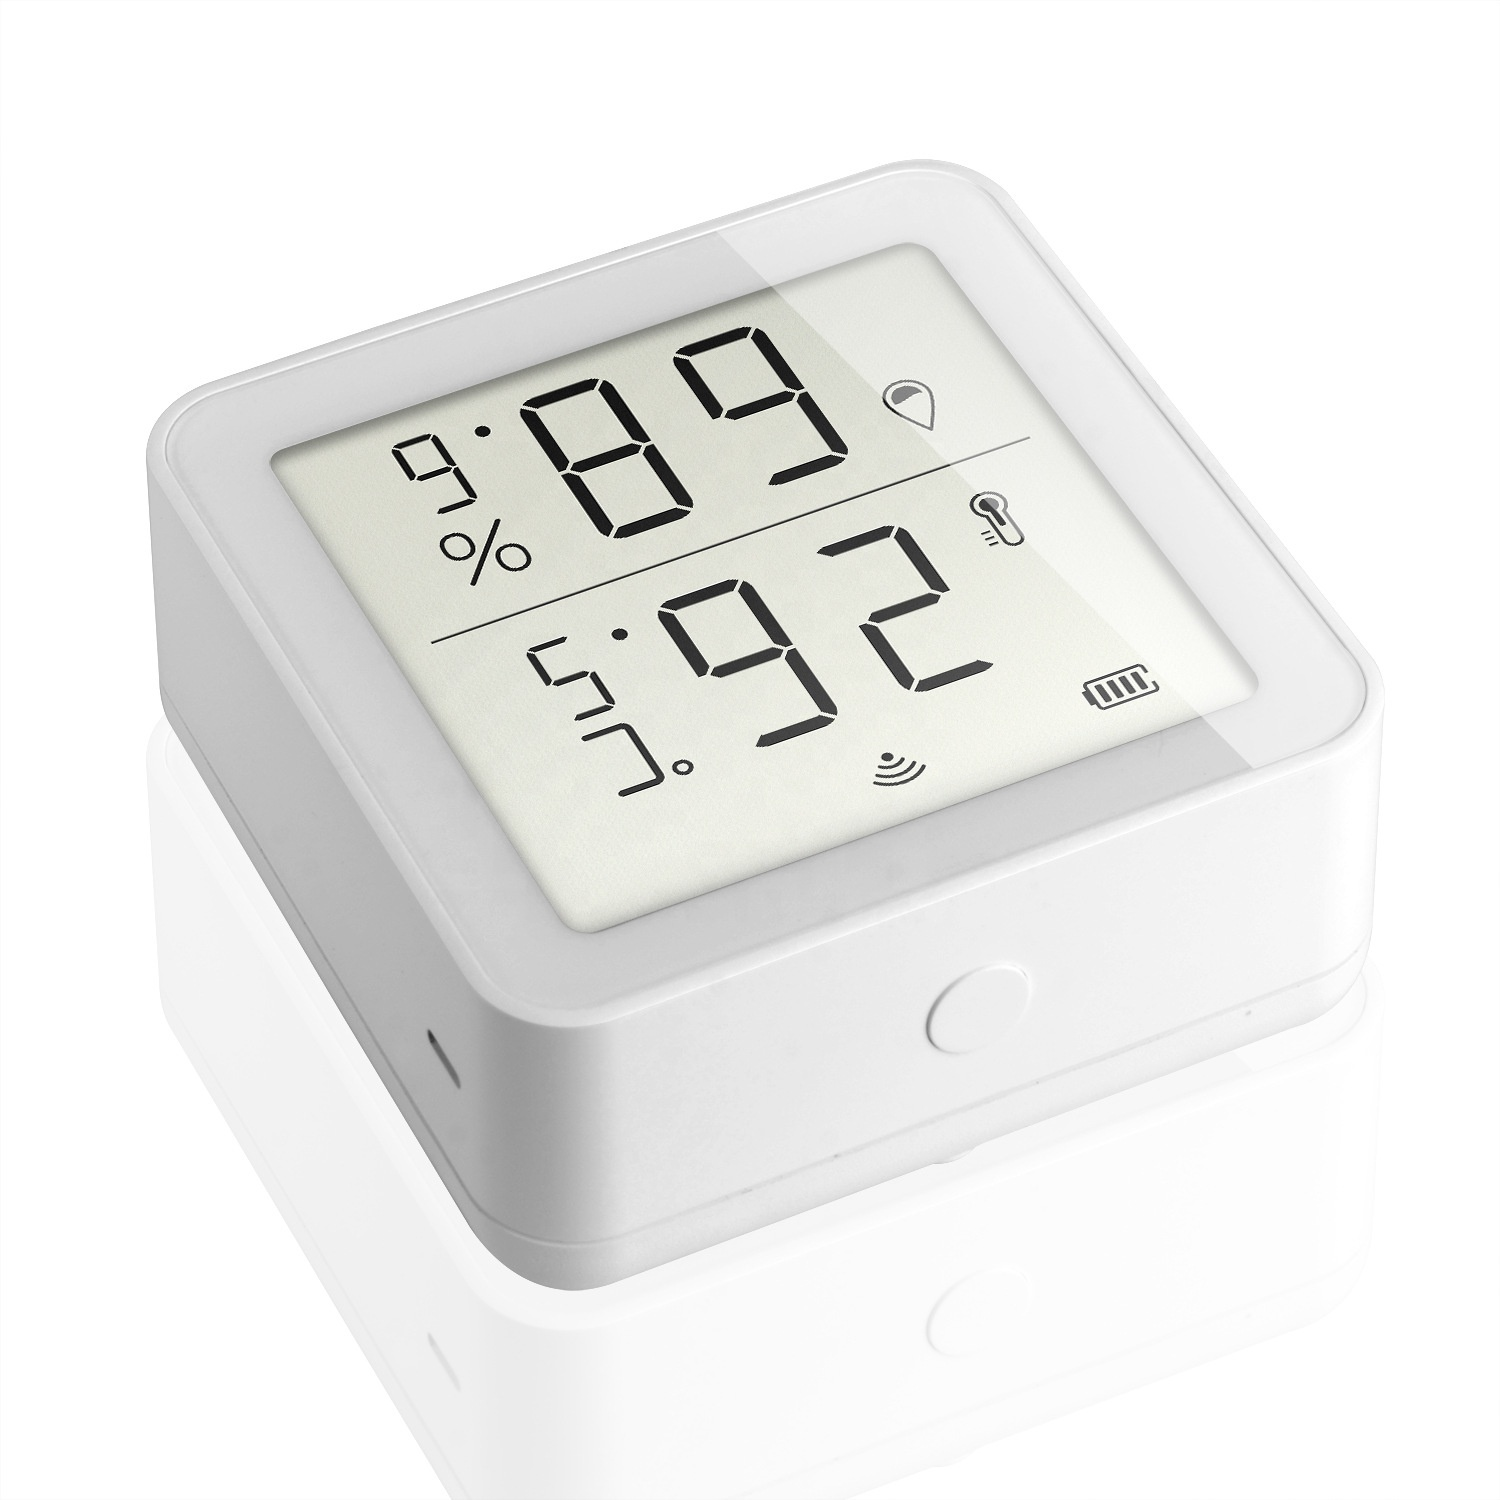 Smart Intelligent Environment Sensor Remote Control via Smart Phone APP Smart Life Temperature Humidity Sensor